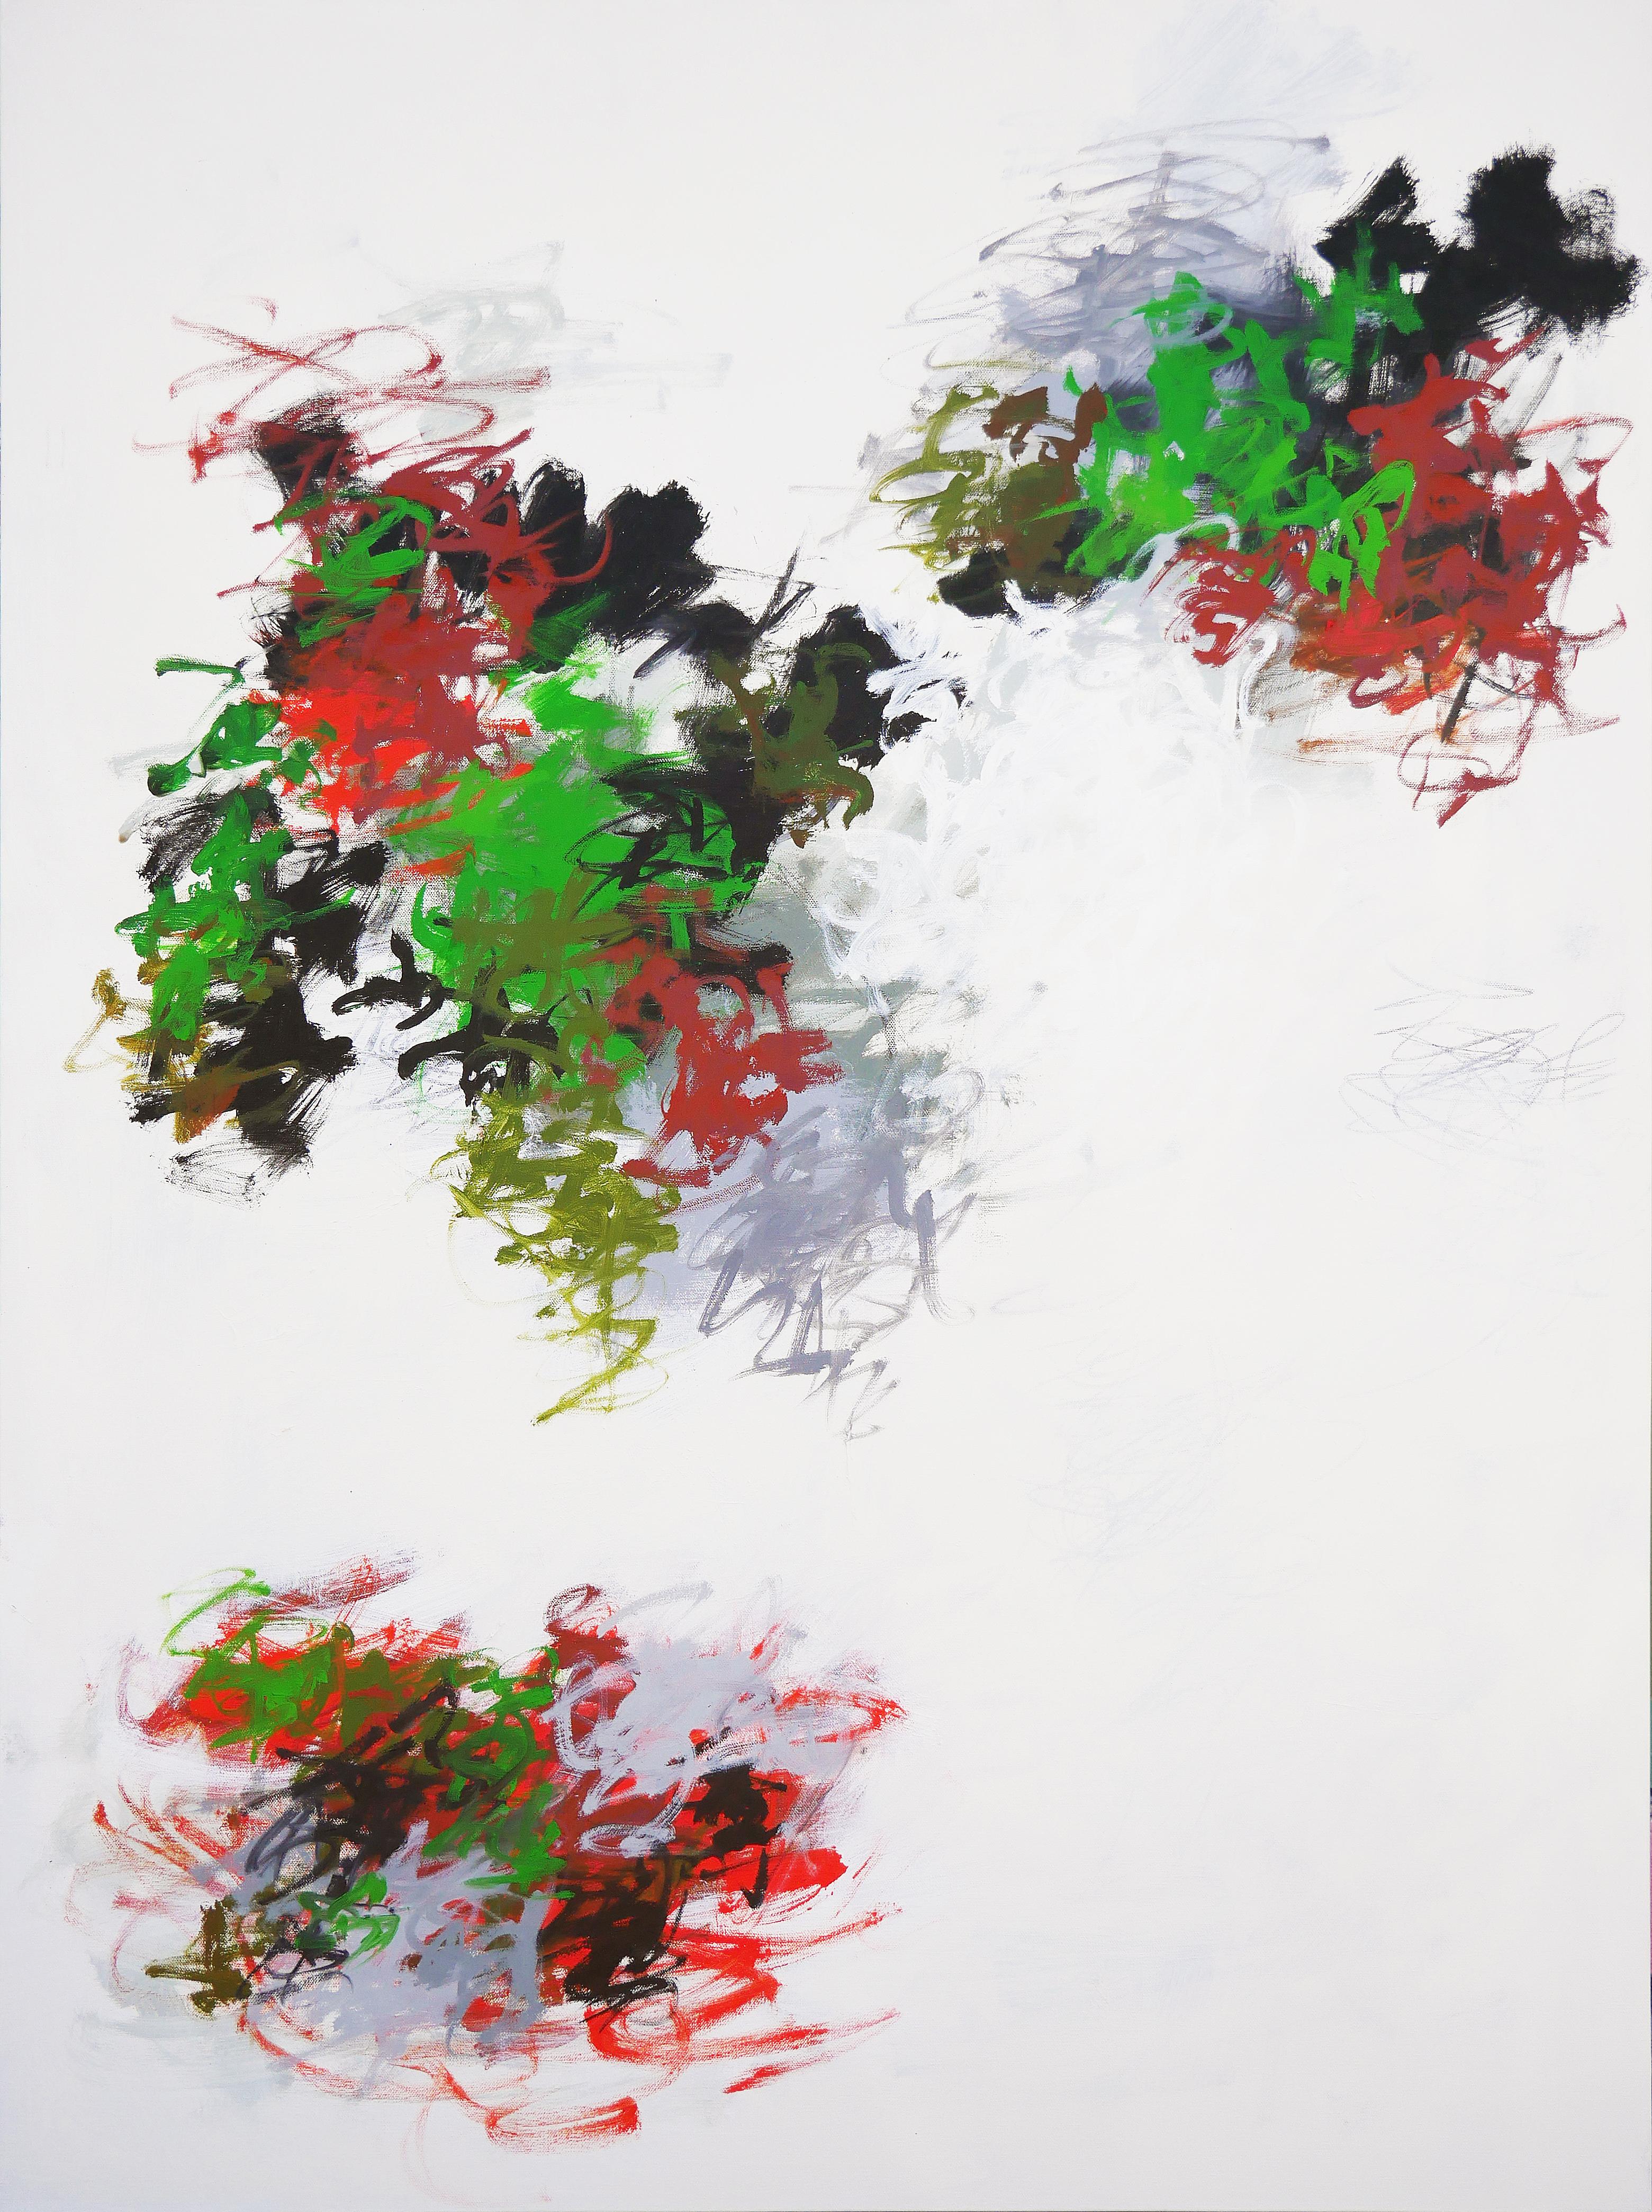 ""Untitled 60"" Grande peinture expressionniste abstraite rouge, noire et verte